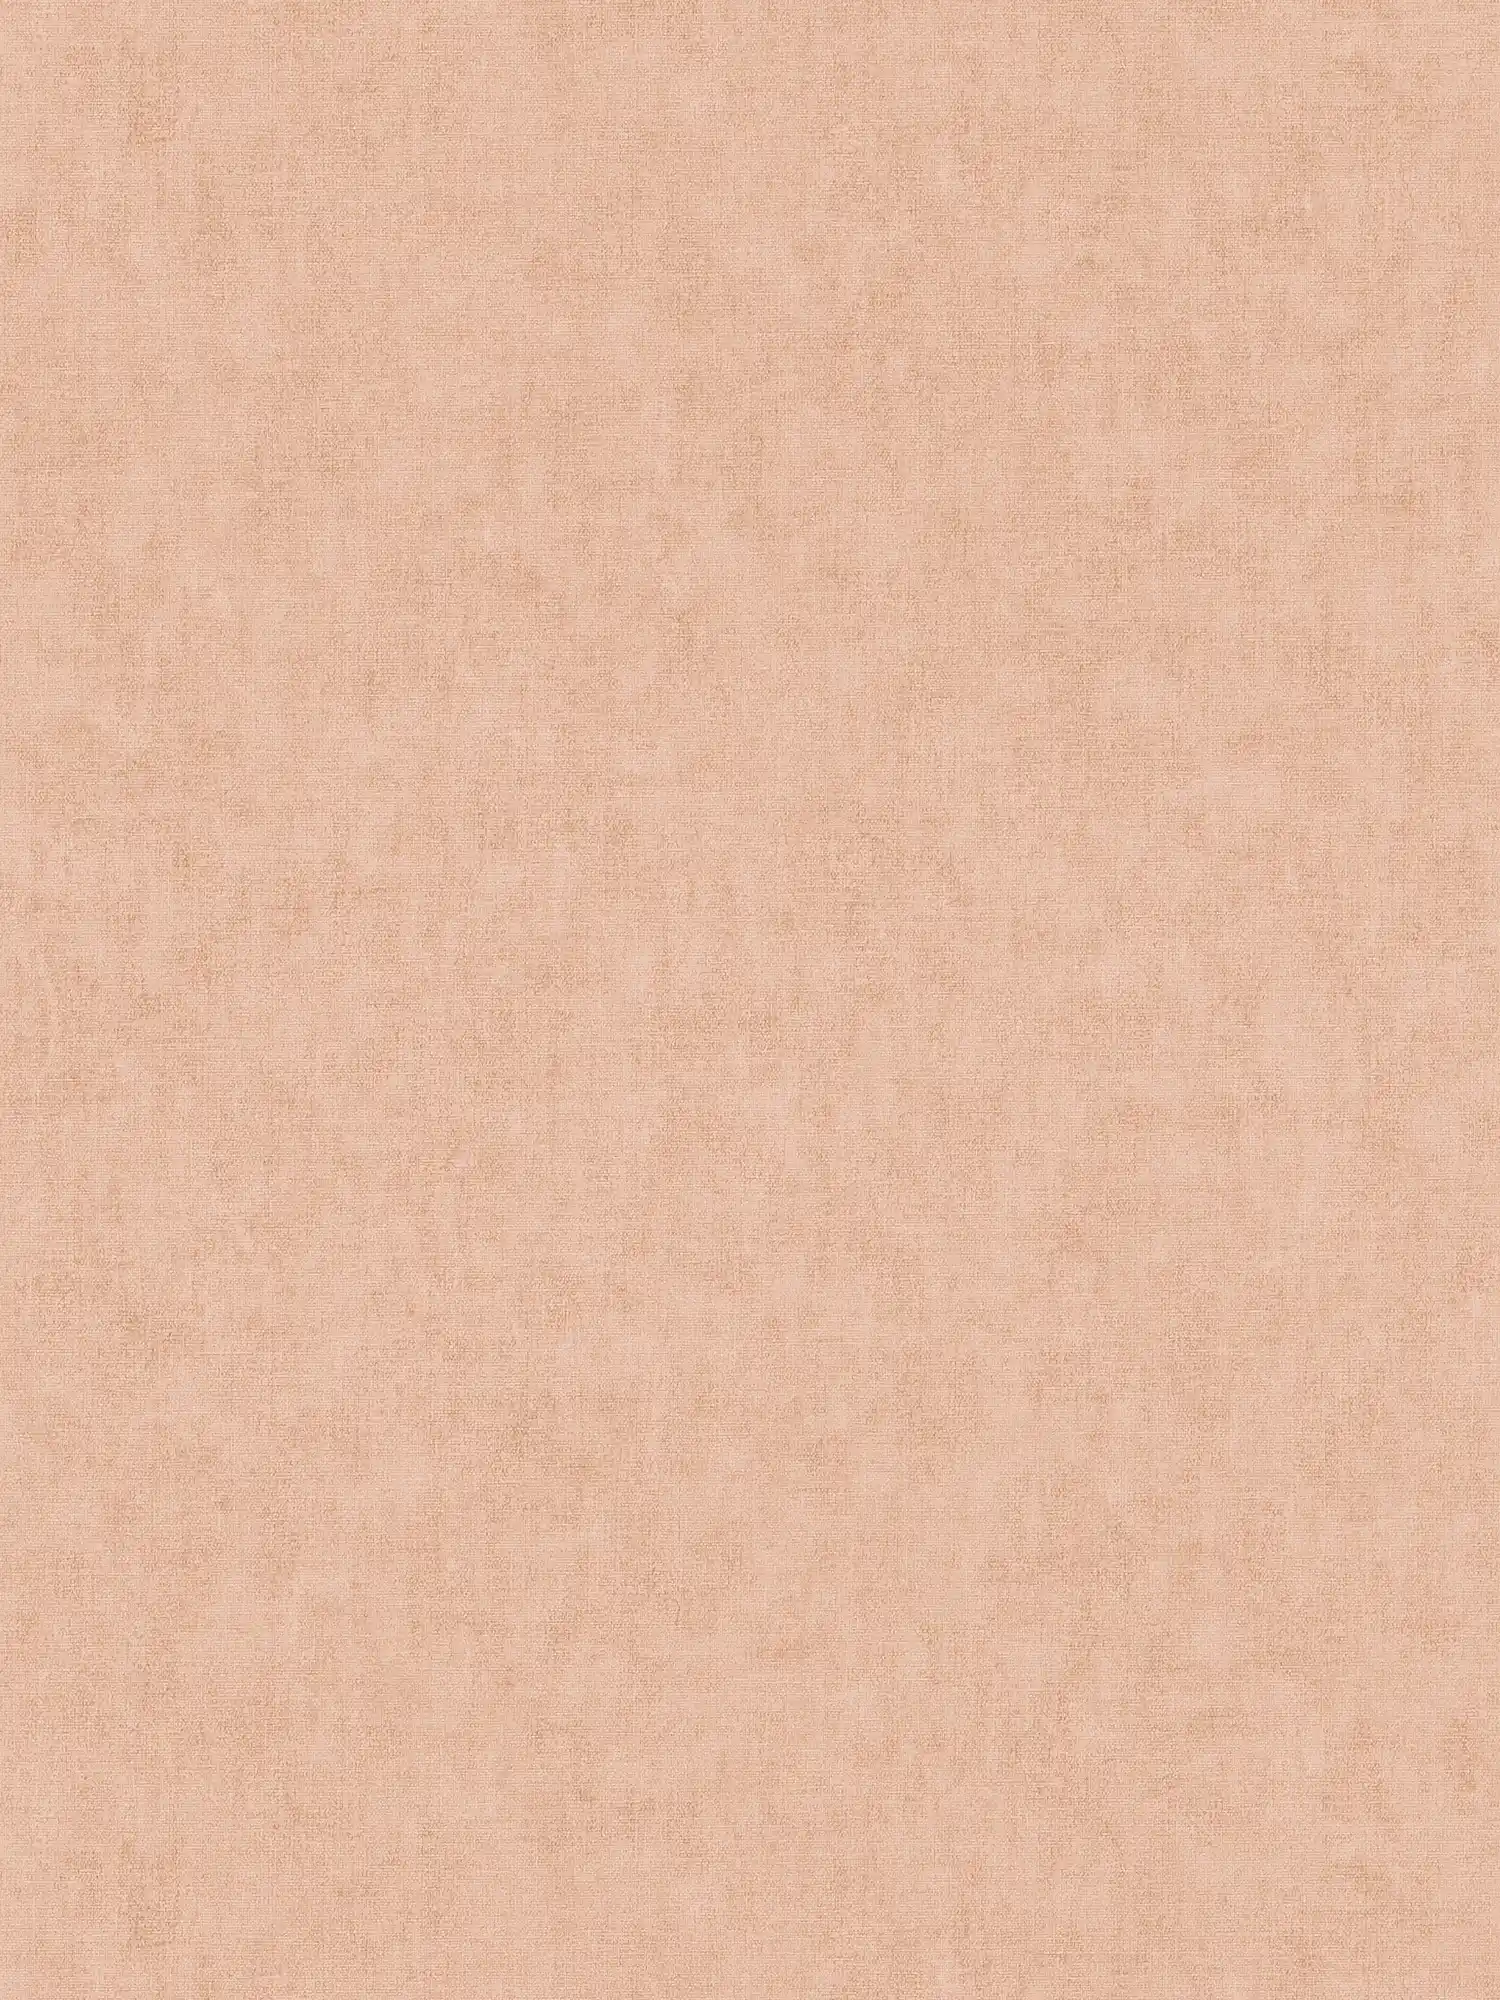 Tapete einfarbig, Leinenoptik & Scandinavian Stil - Rosa, Orange
